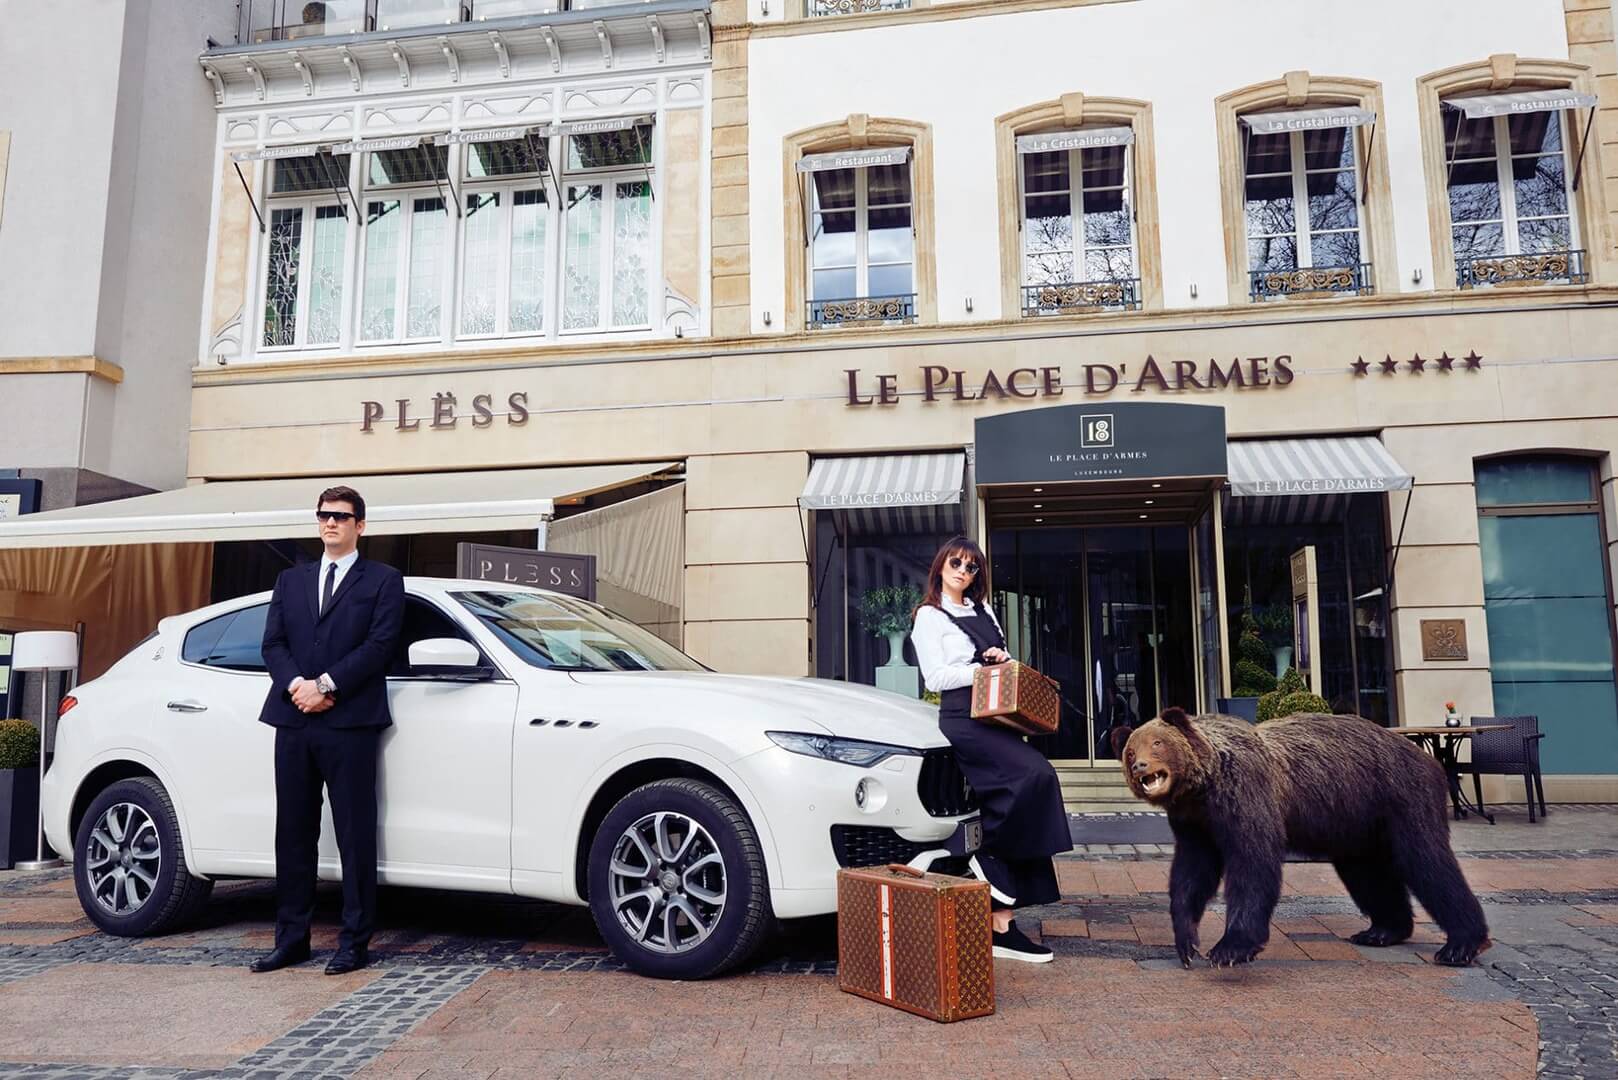 Парадный вход в отель "Le Place D'Armes" с автомобилем класса люкс